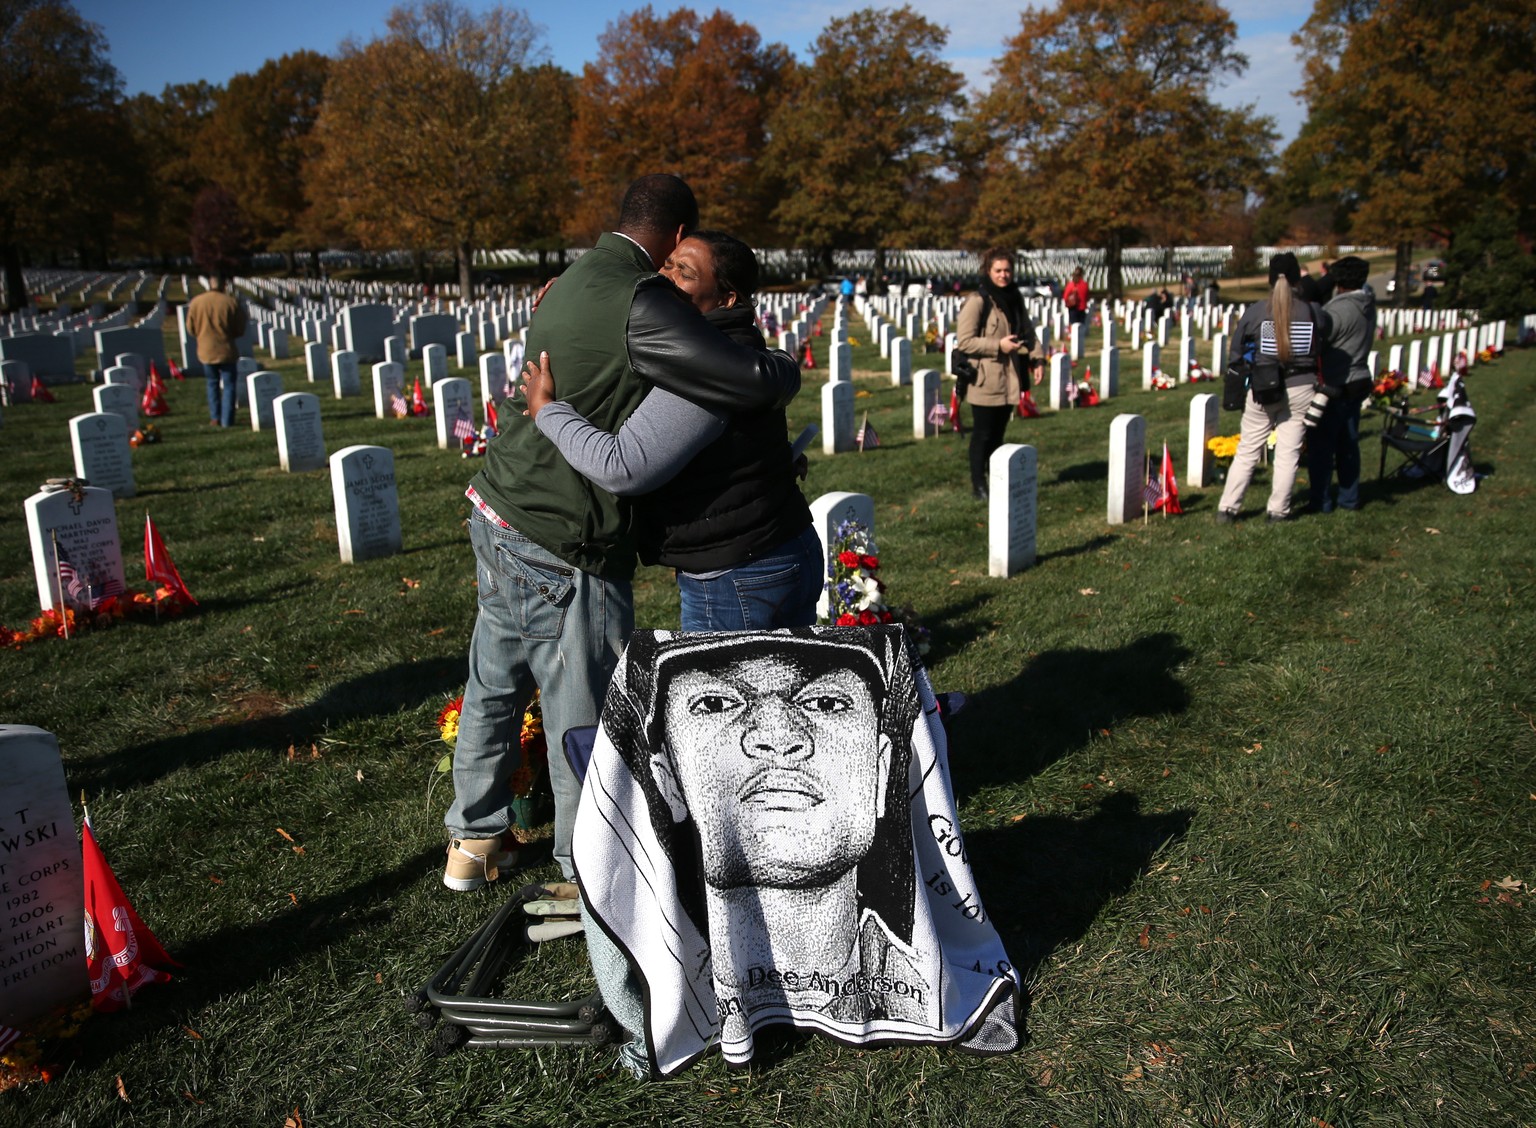 Angehörige trauern um einen gefallenen US-Soldaten.